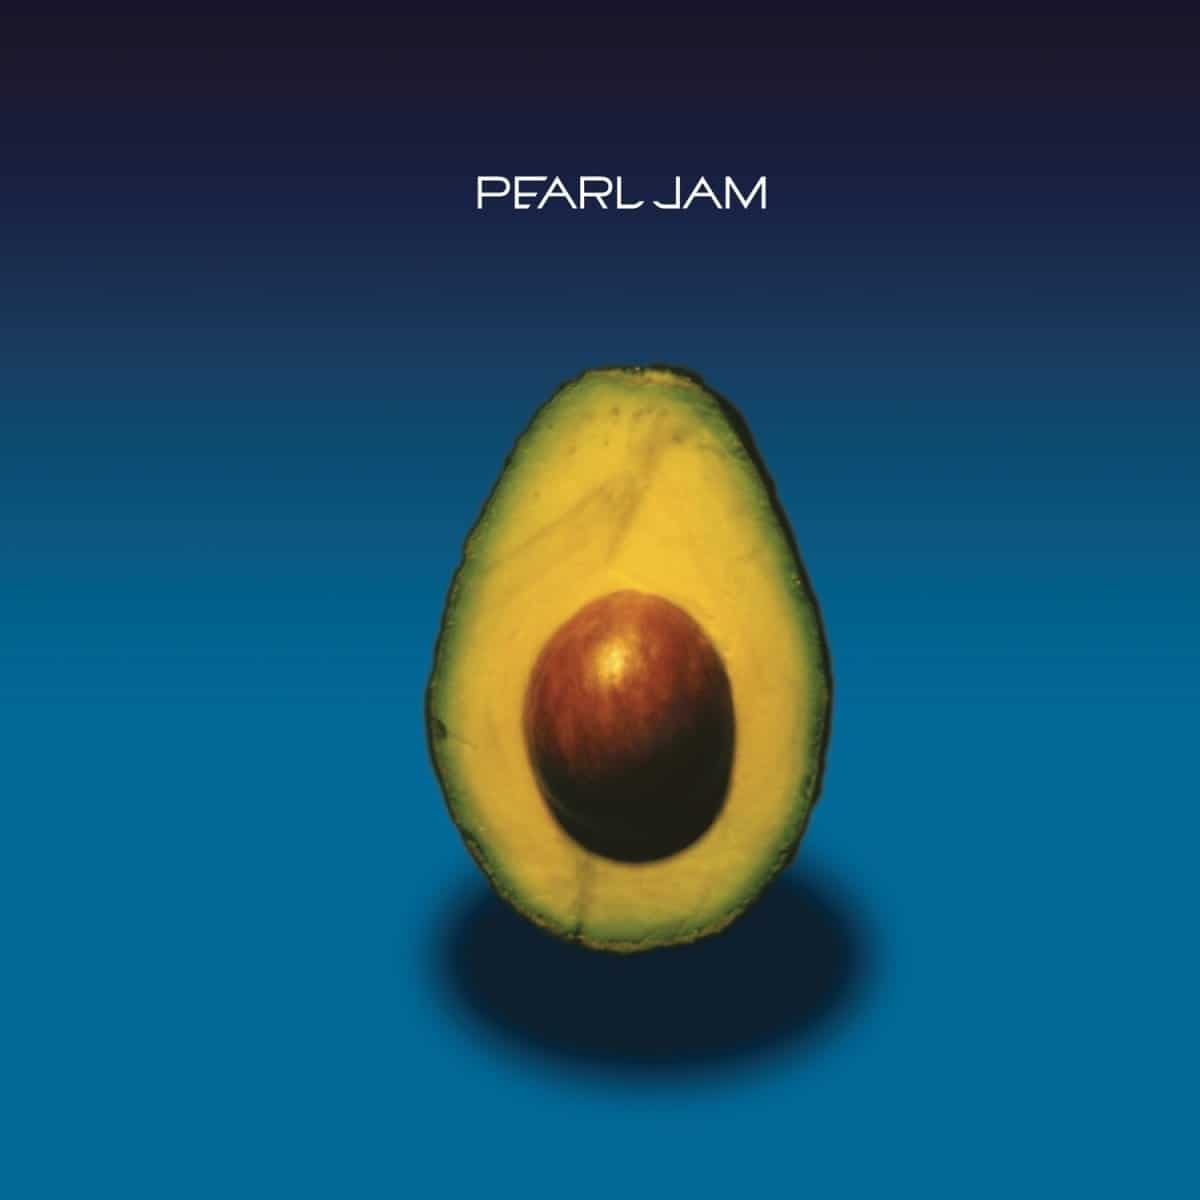 Pearl-Jam-vinyl-LP-record-album-front